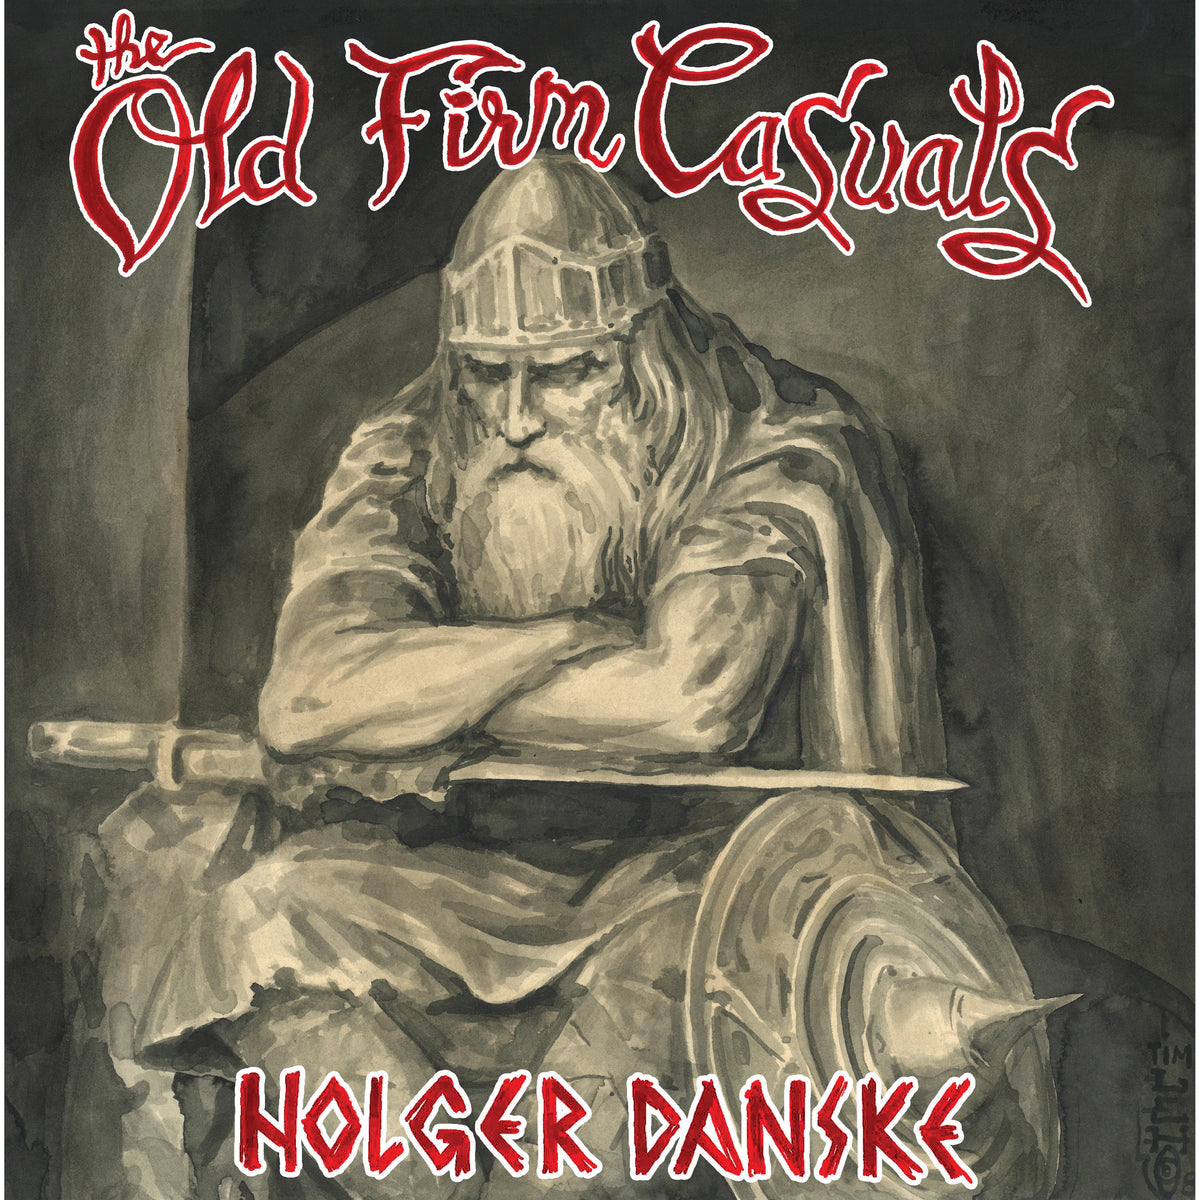 The Old Firm Casuals - Holger Danske CD